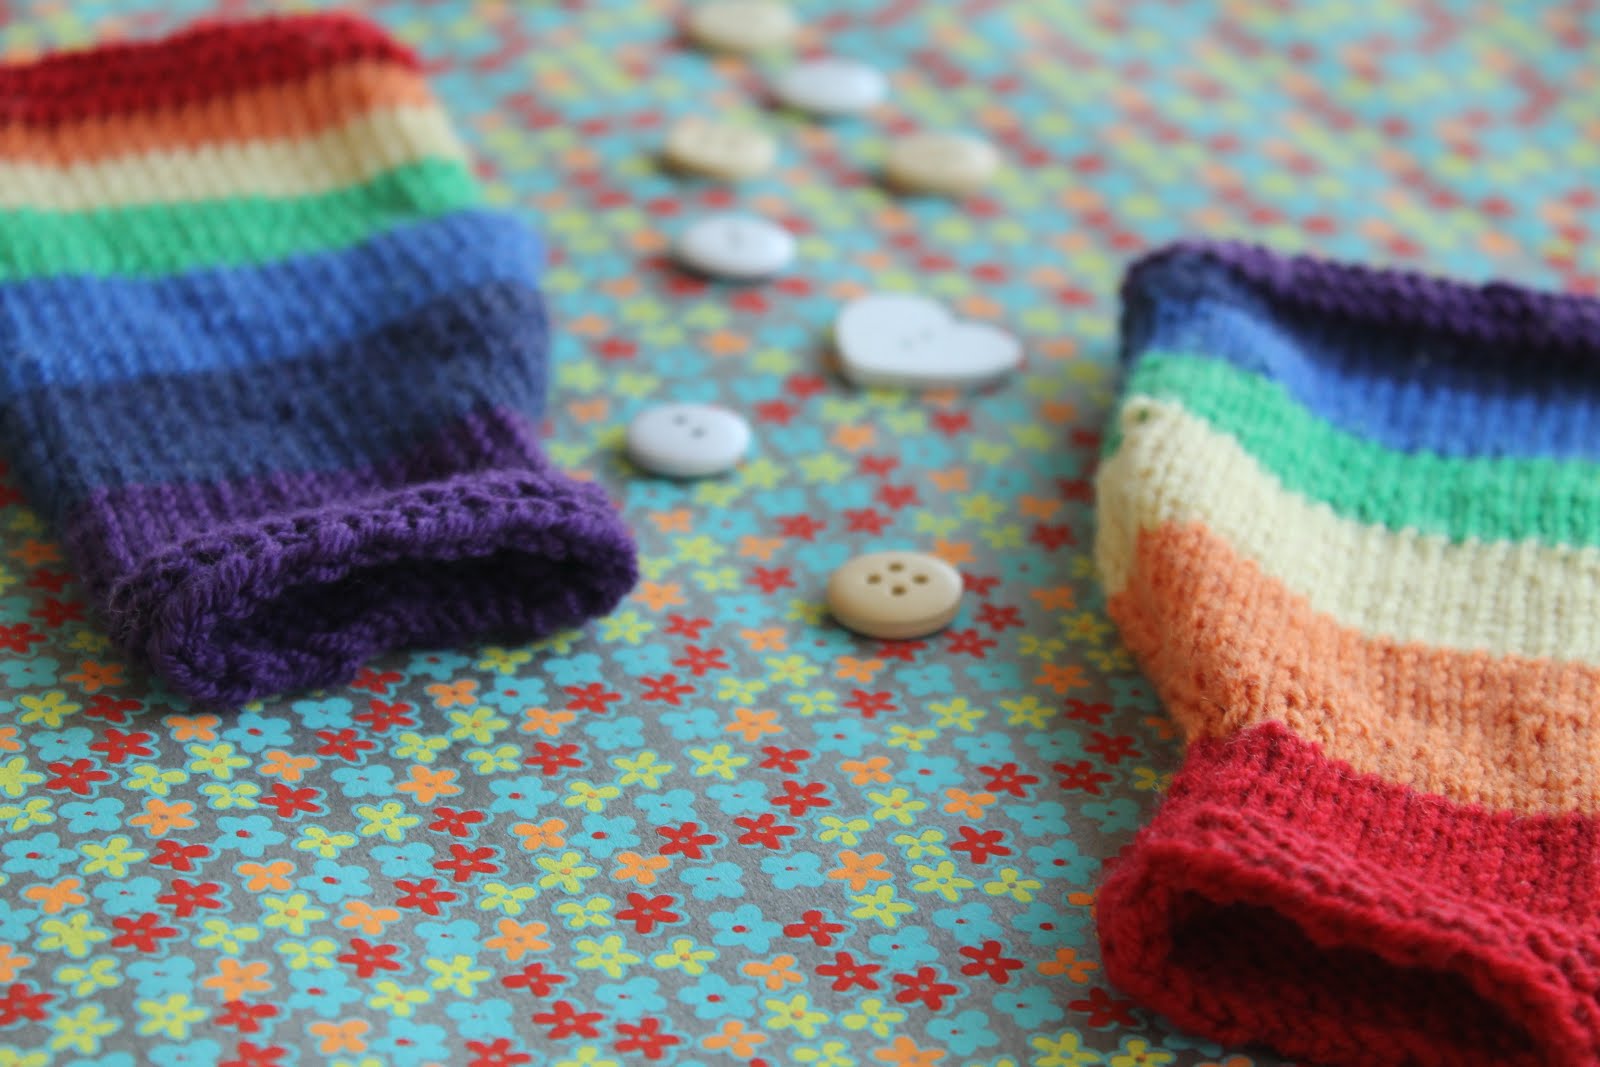 Rainbow baby legwarmer knitting pattern